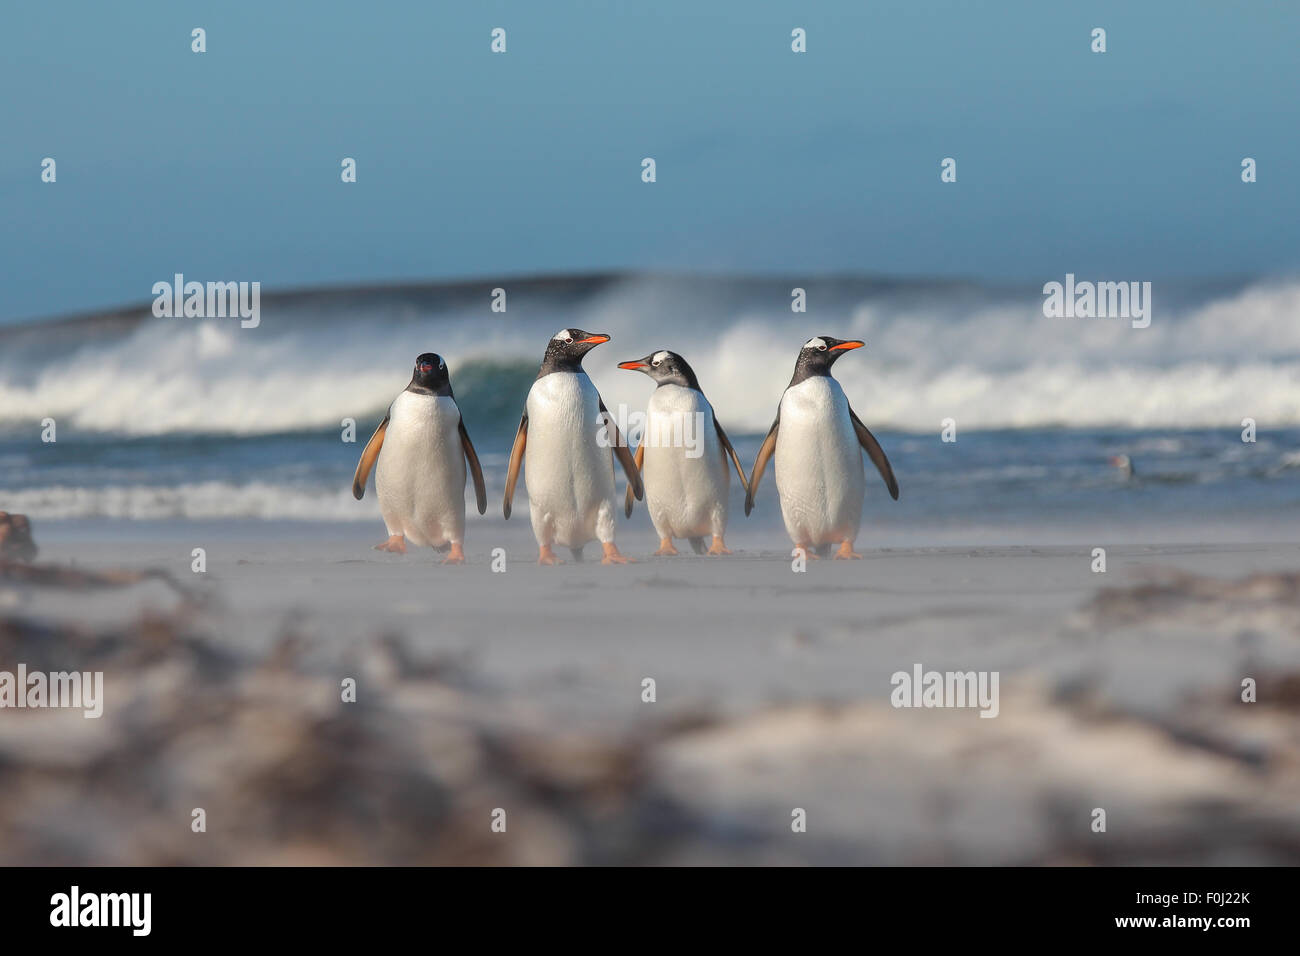 Quattro pinguini Gentoo a piedi dal mare. Bertha's Beach, Isole Falkland. Foto Stock